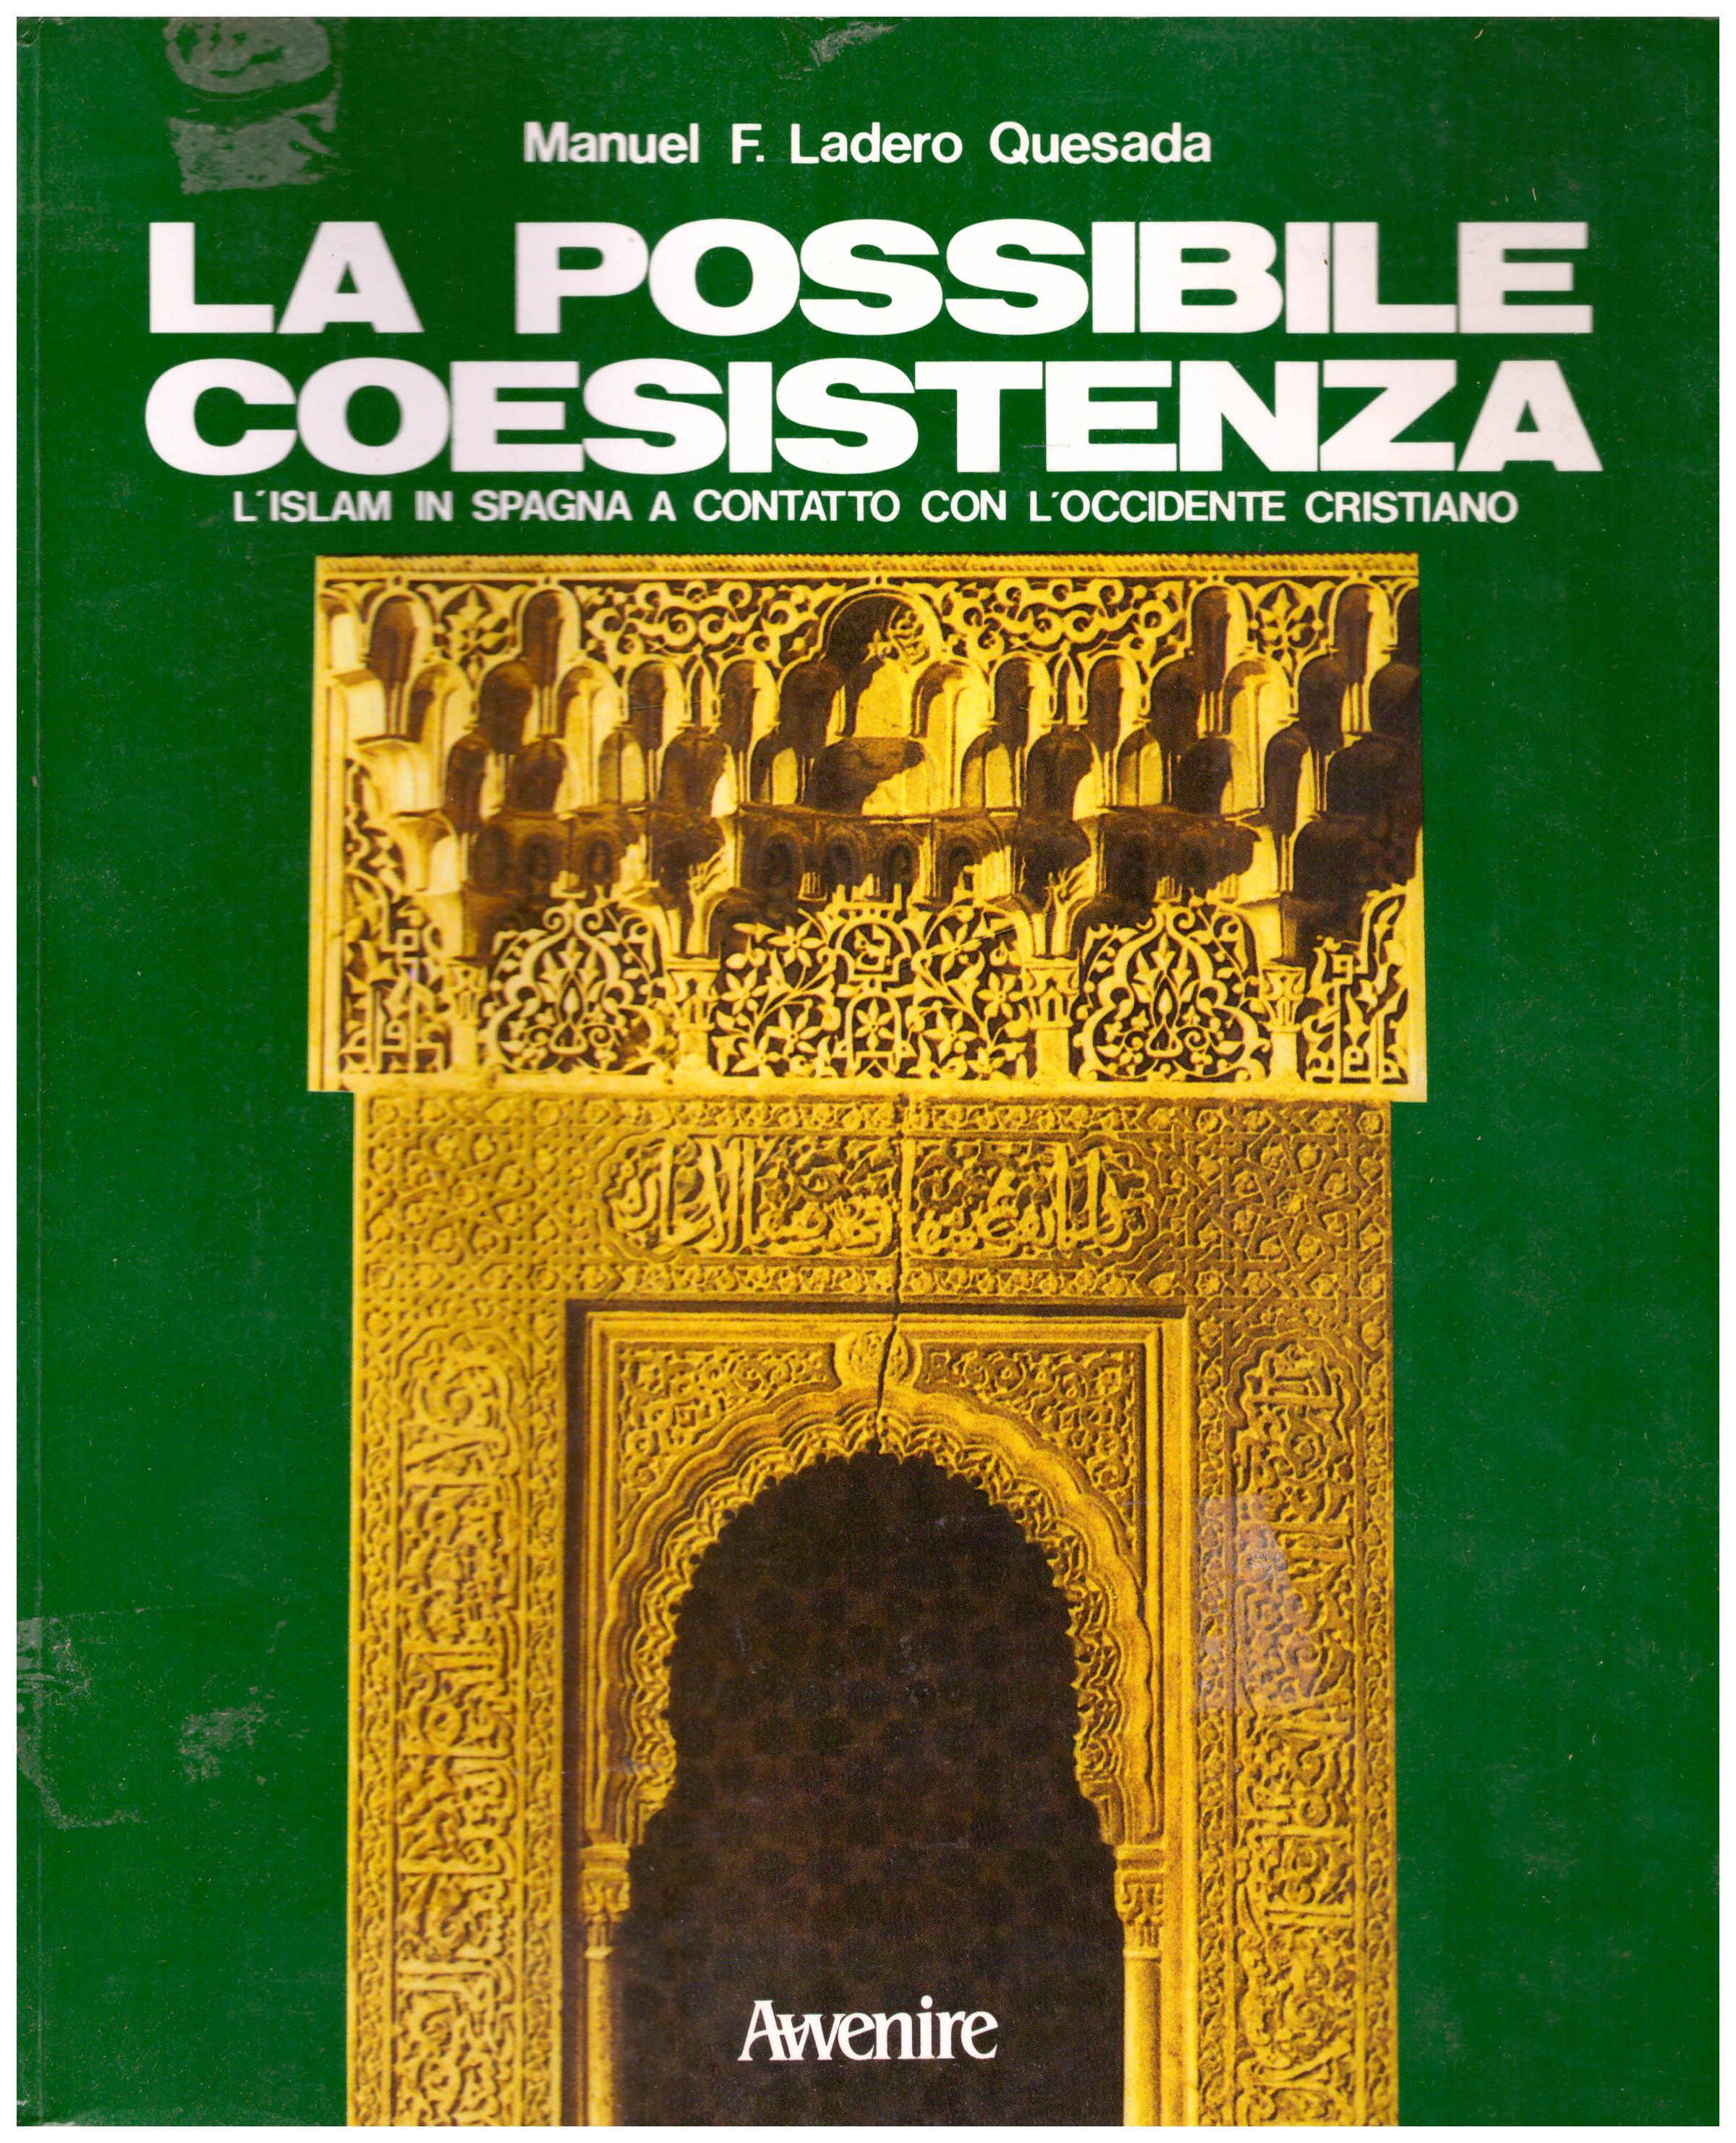 Titolo: La possibile coesistenza    Autore: Manuel F. Ladero Queseda    Editore: Avvenire